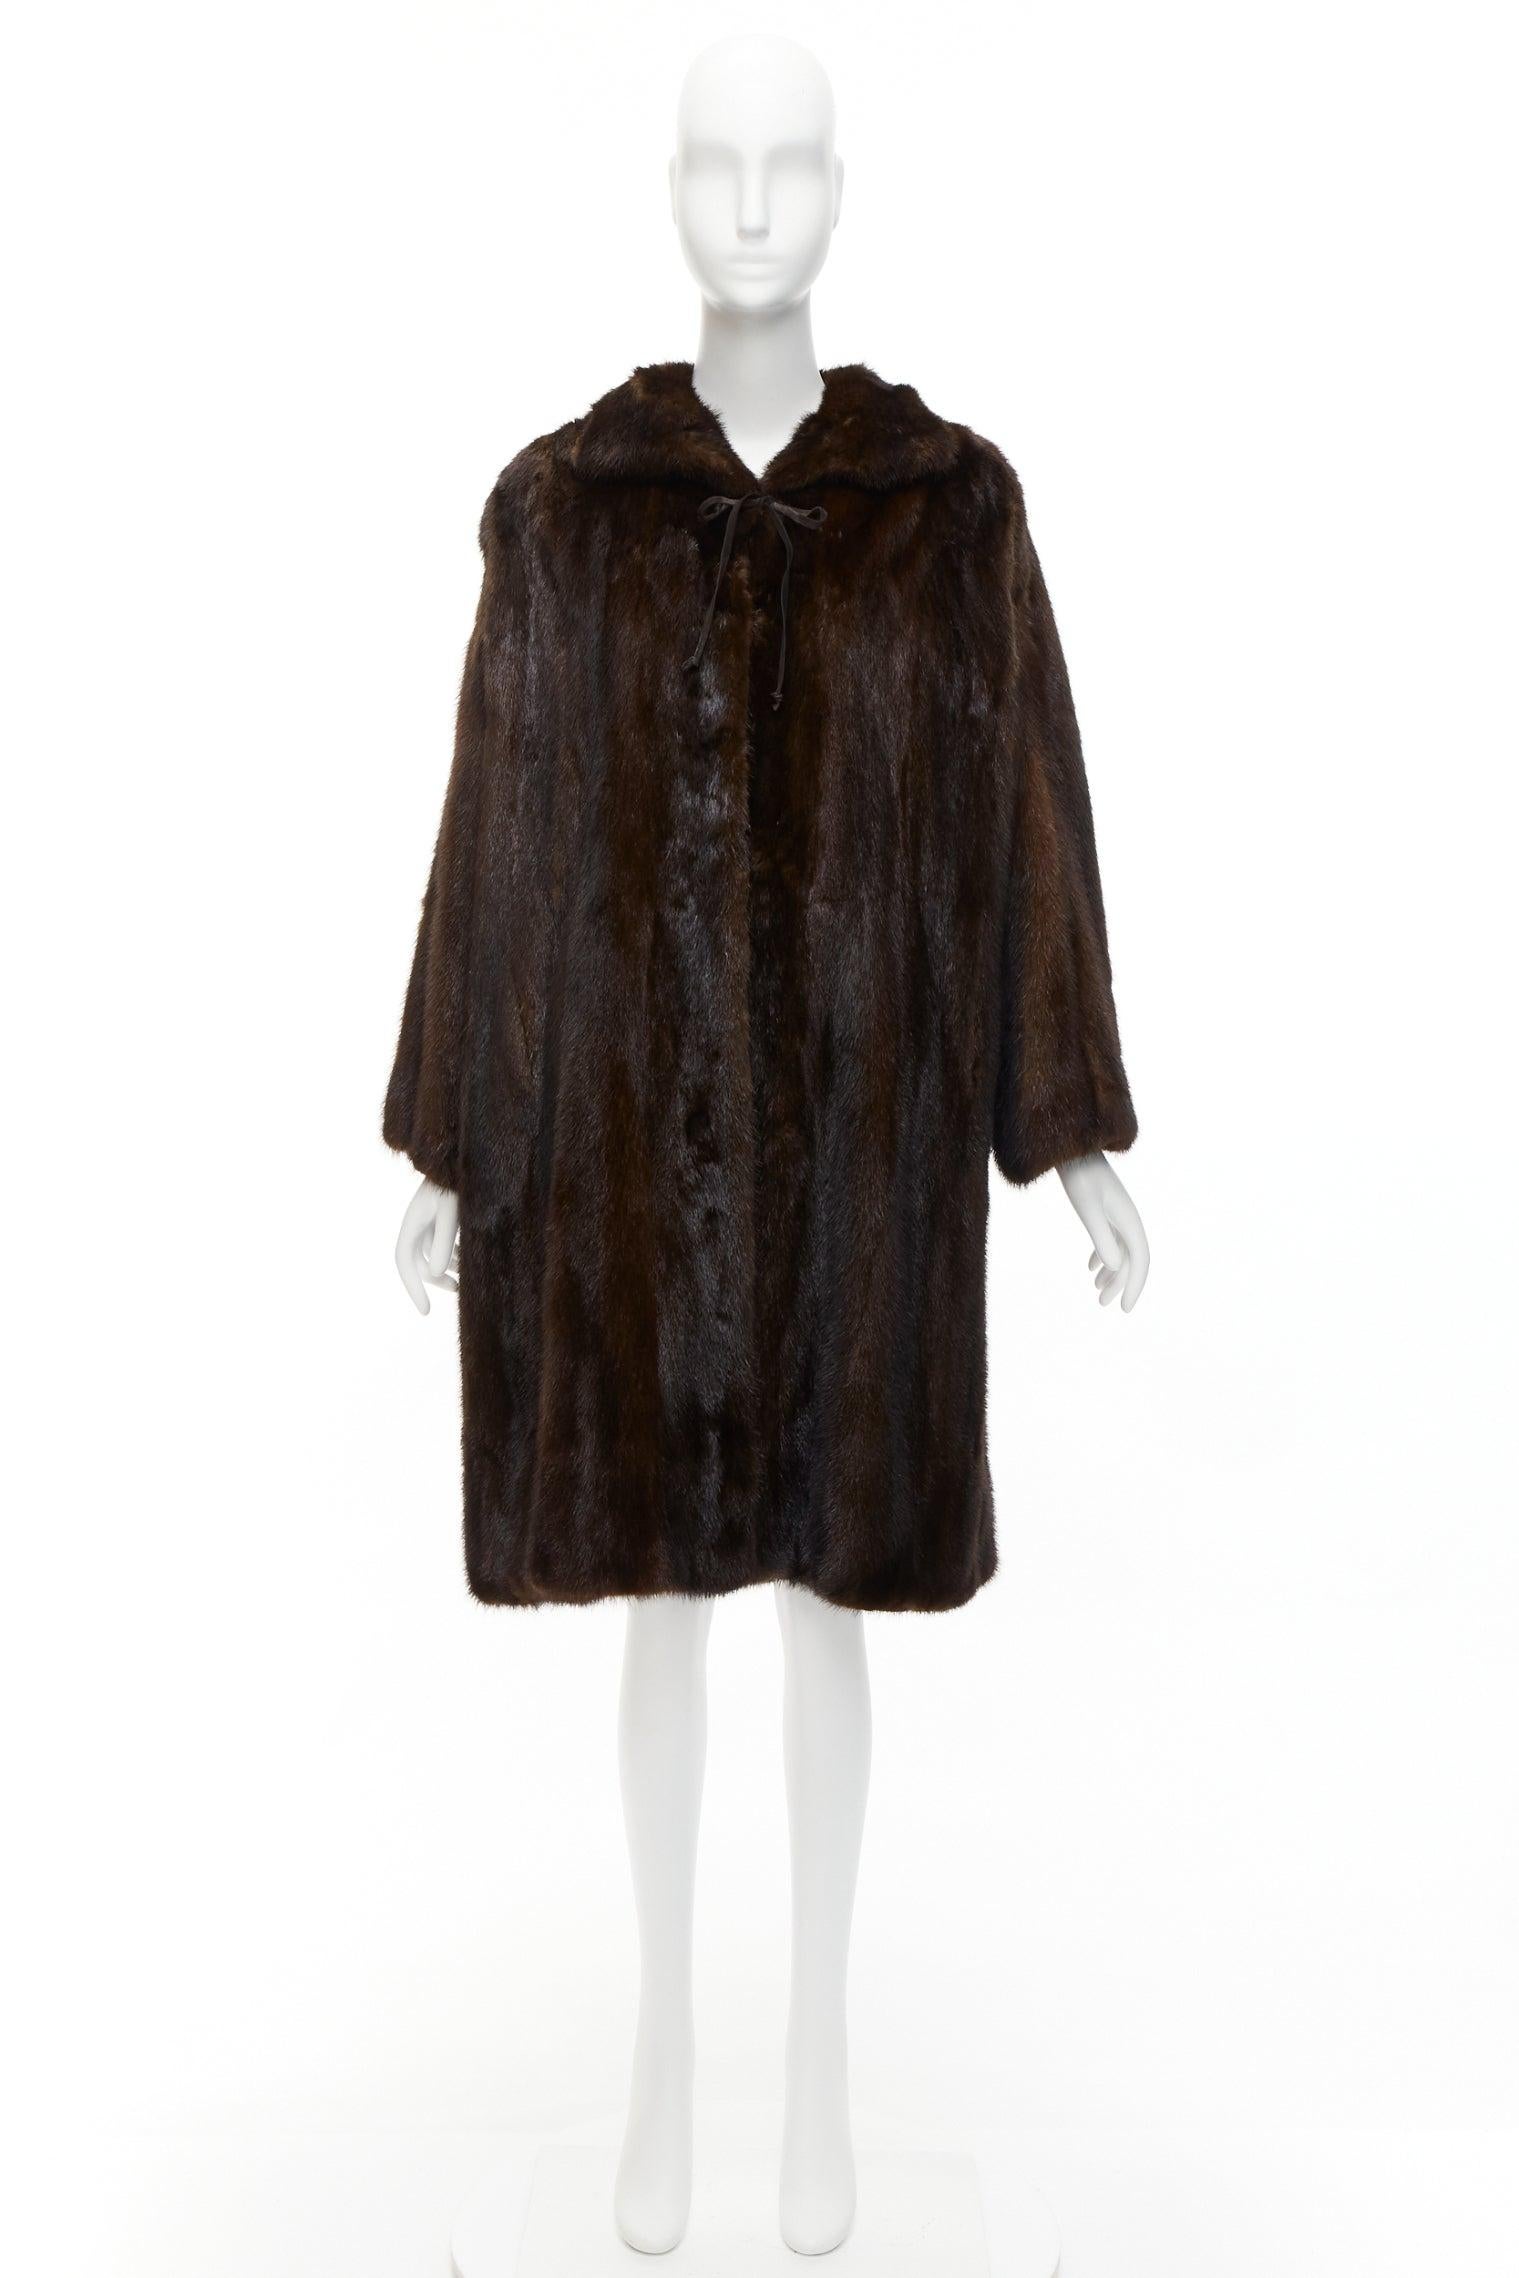 UNLABELLED dark brown genuine fur tie collar longline long sleeve jacket coat For Sale 4